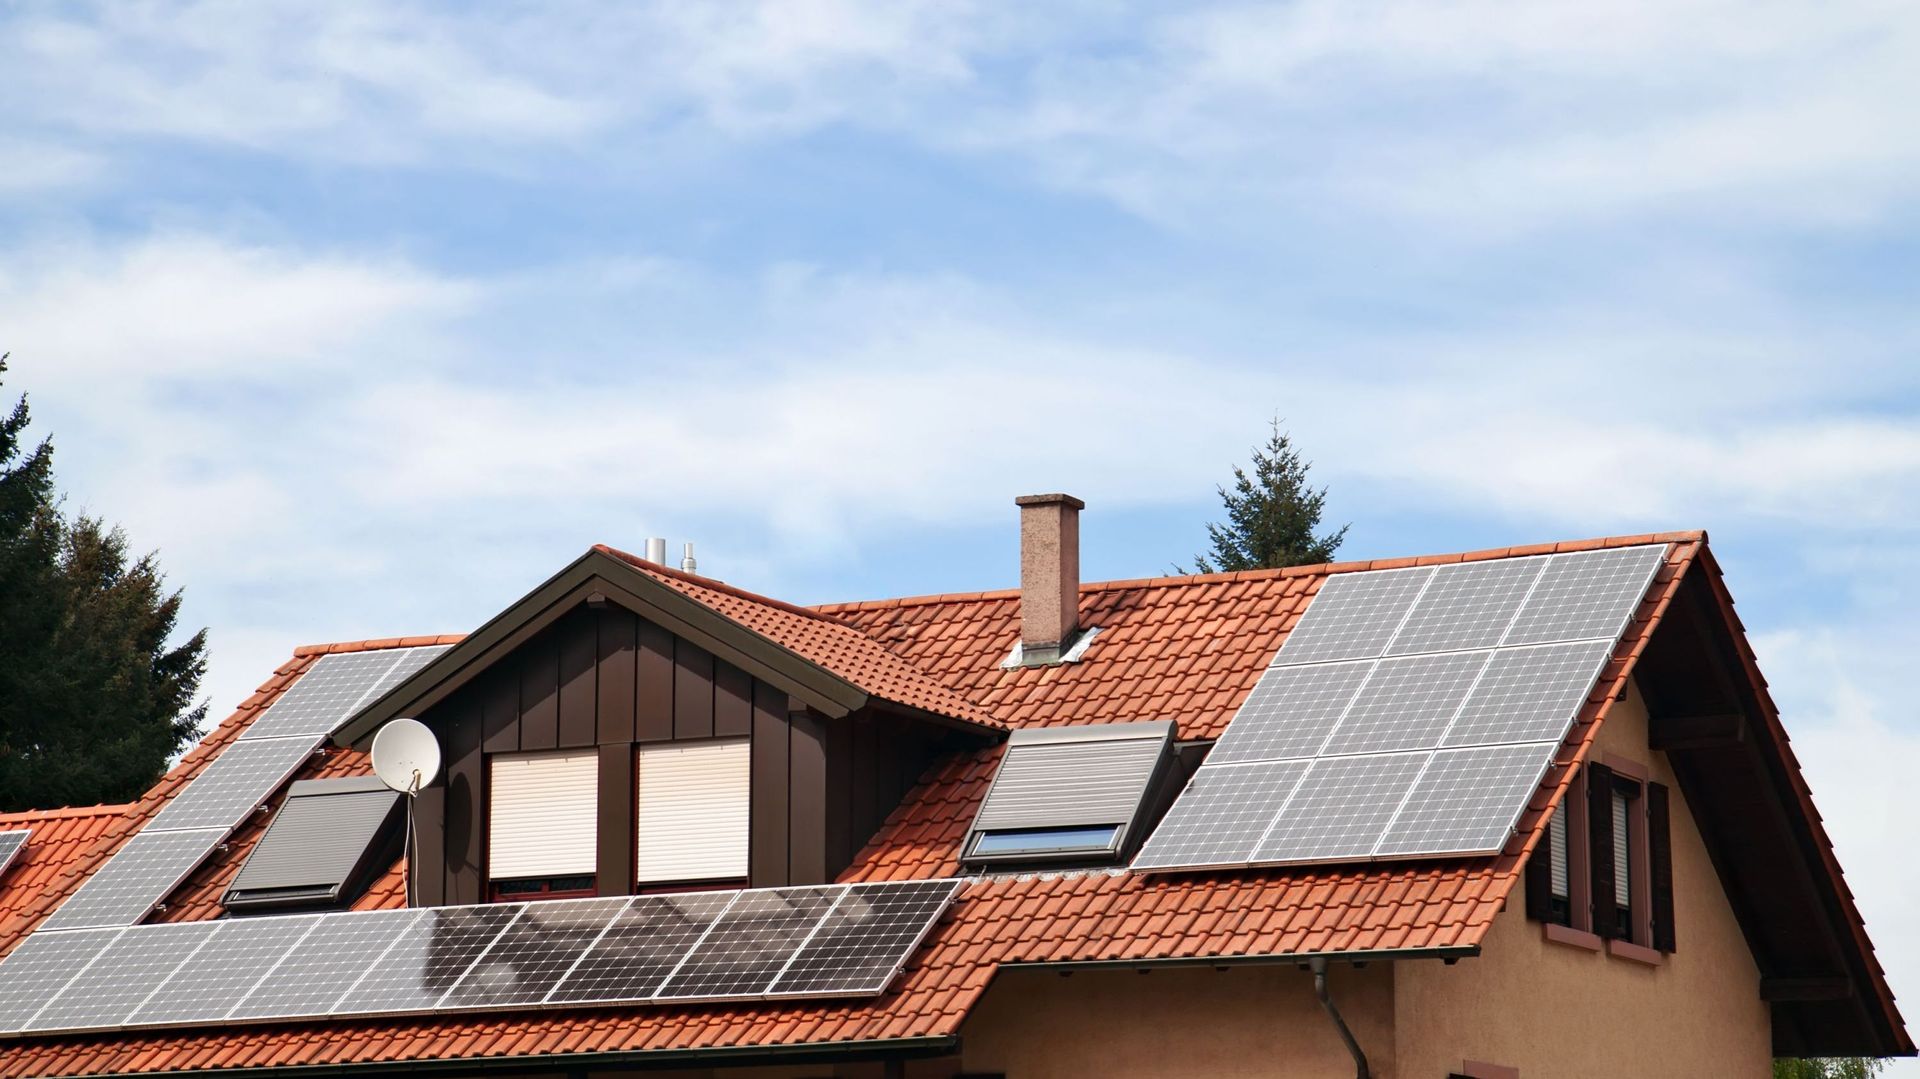 Panneaux photovoltaïques : les prosumers seront dispensés de redevance pendant deux ans